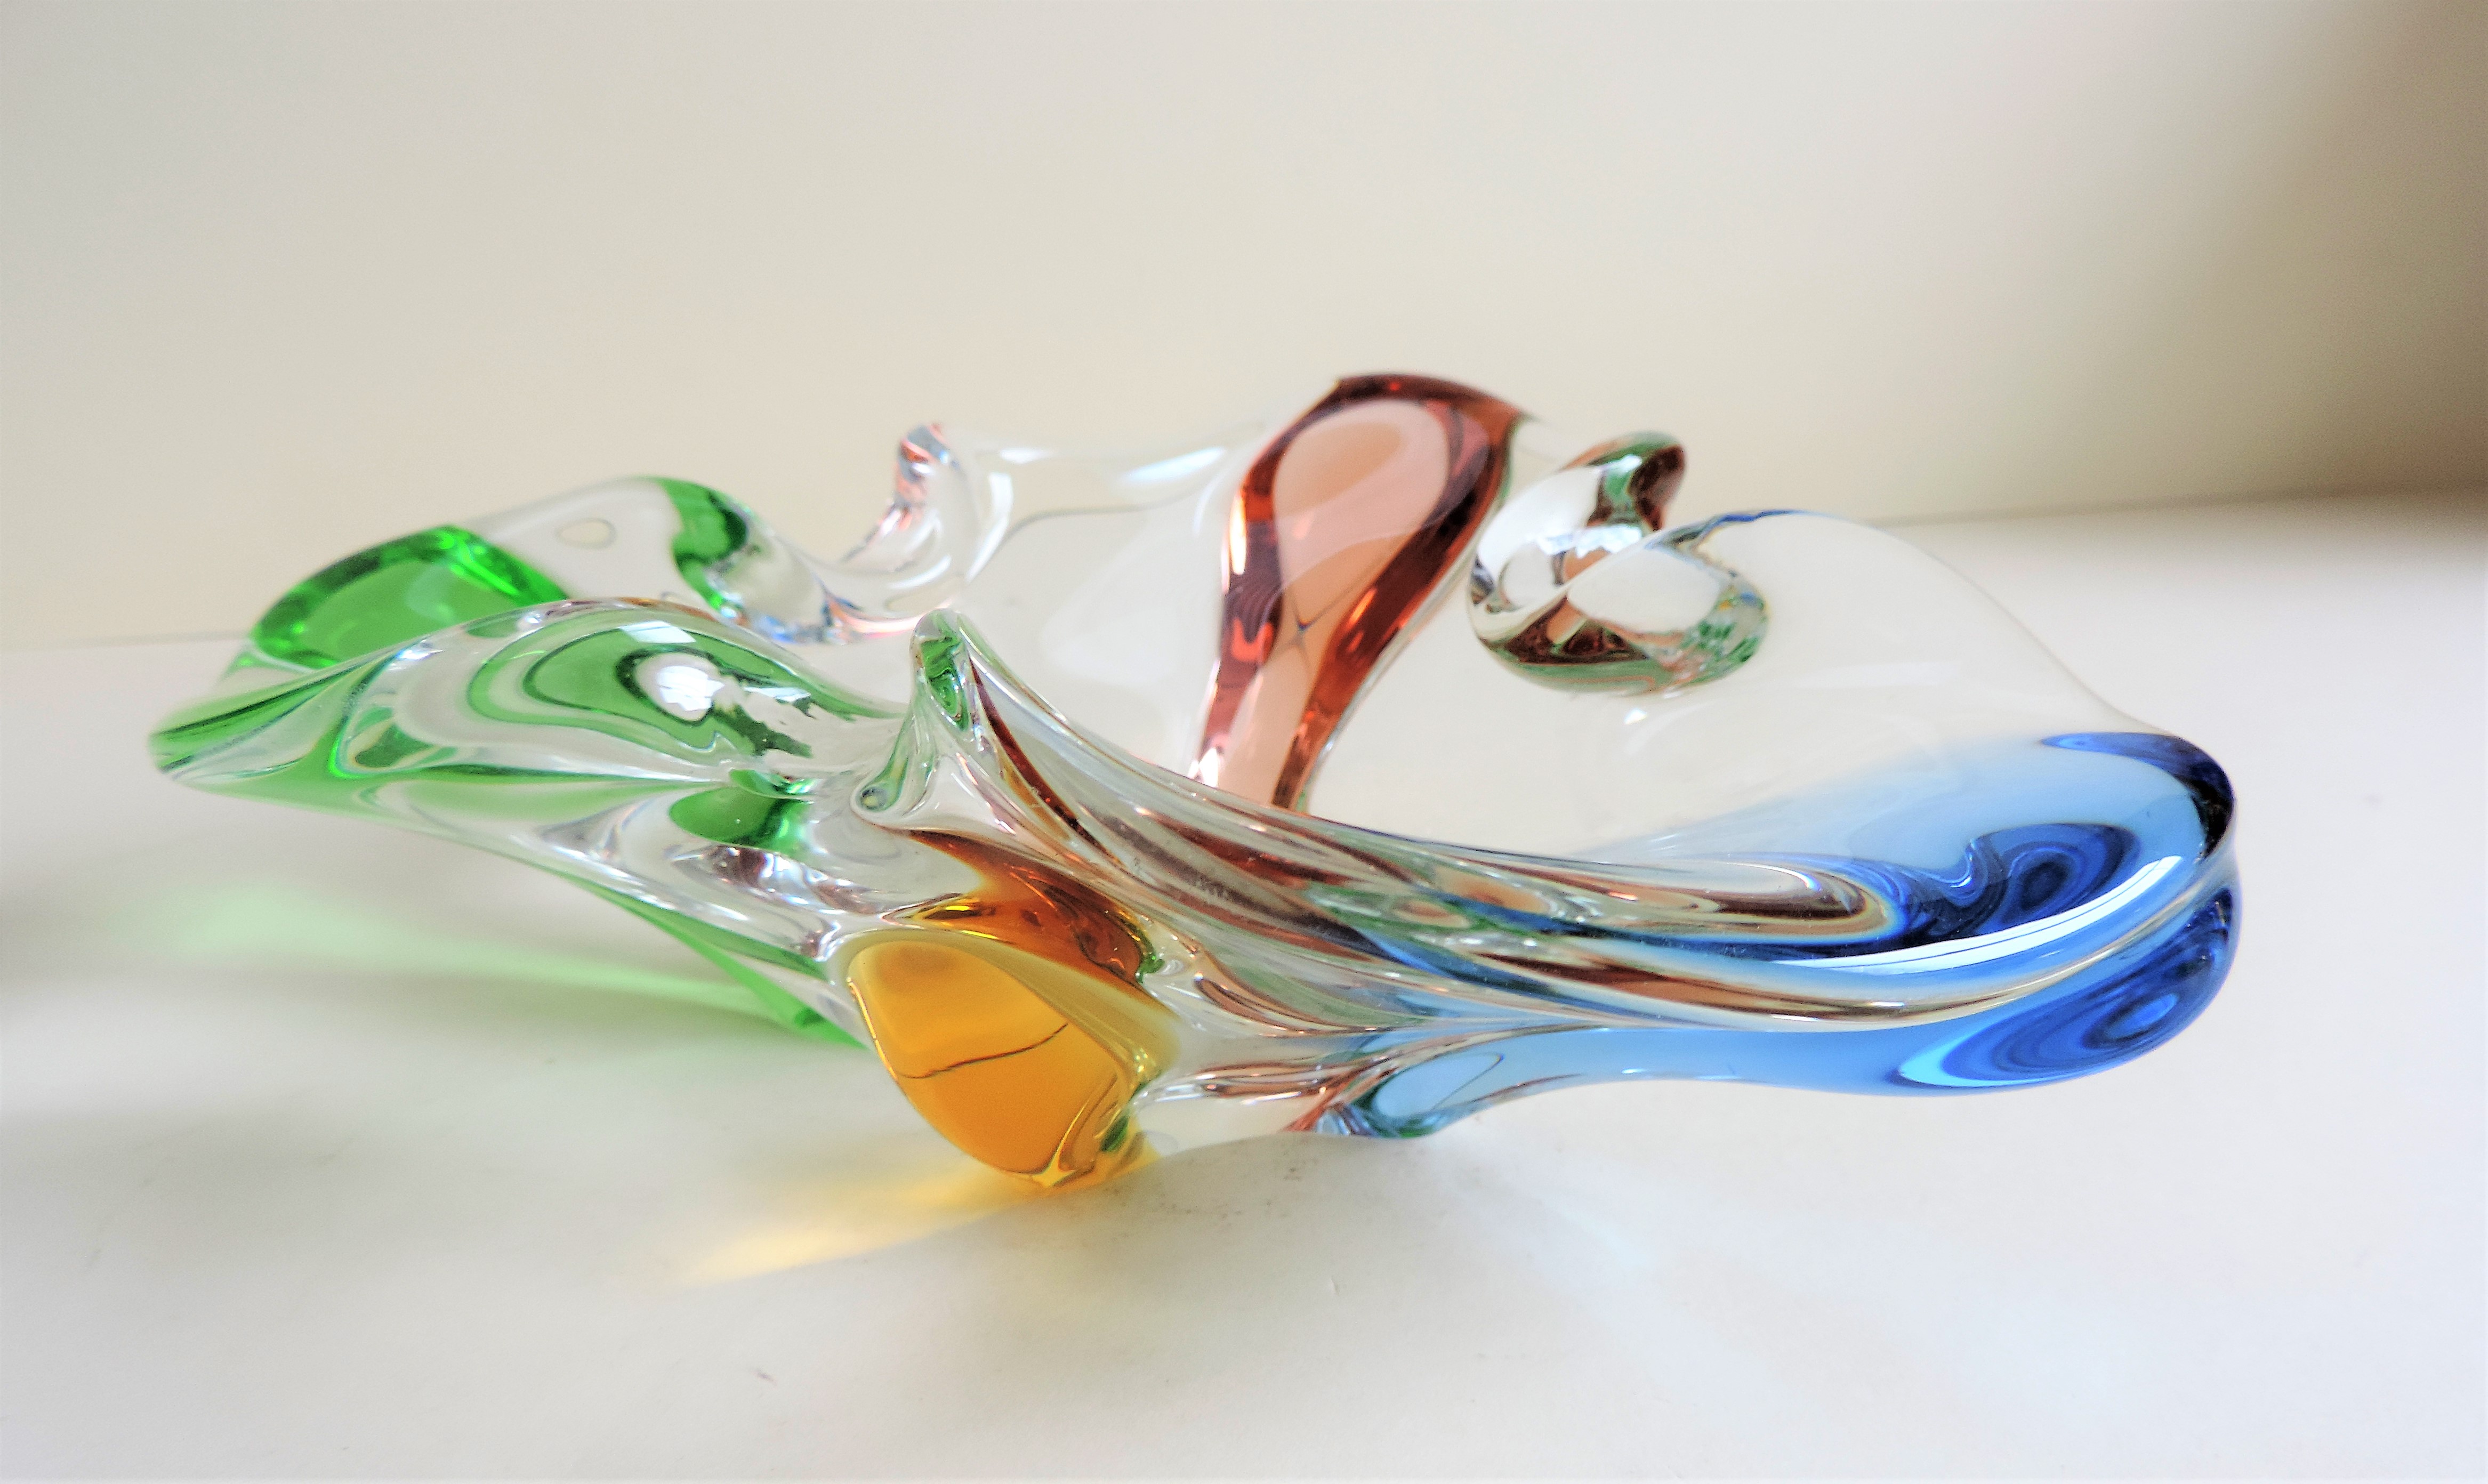 Czech Art Glass Bowl by Frantisek Zemek for Mstisov Glassworks, 1960 - Image 2 of 6